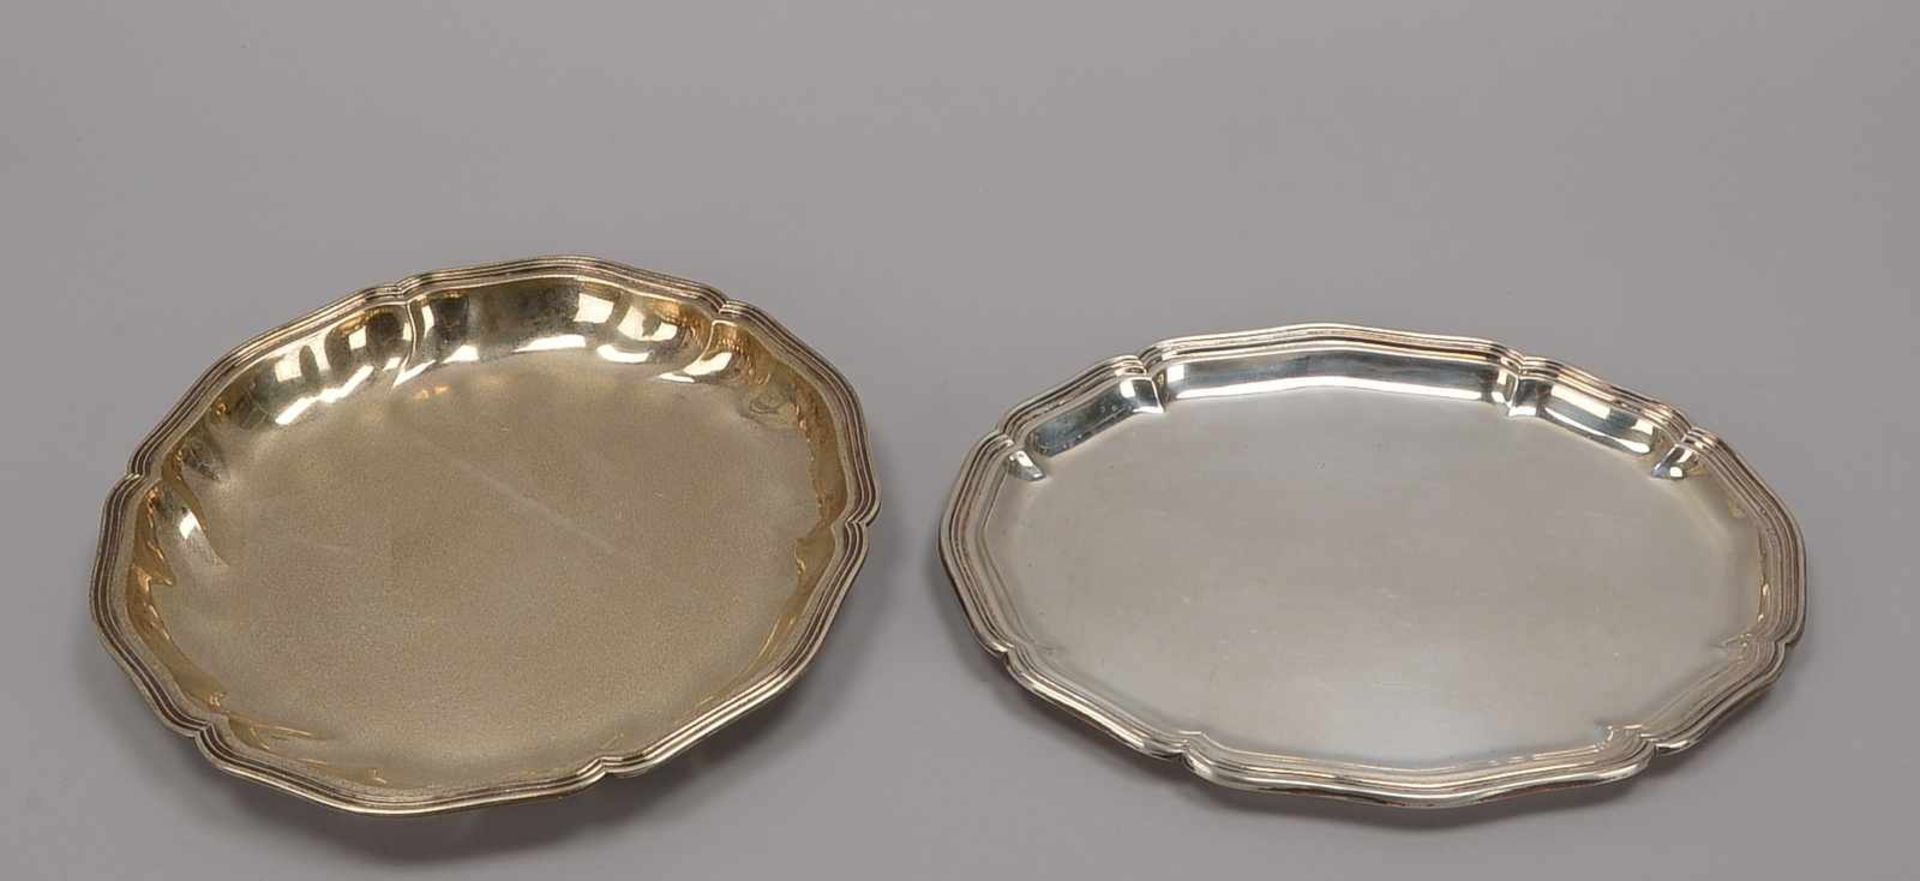 2 Silberteile, unterschiedliche Silbergehalte: Tablett, 830 Silber, Maße 30,5 x 23,5 cm; und Schale, - Bild 2 aus 2